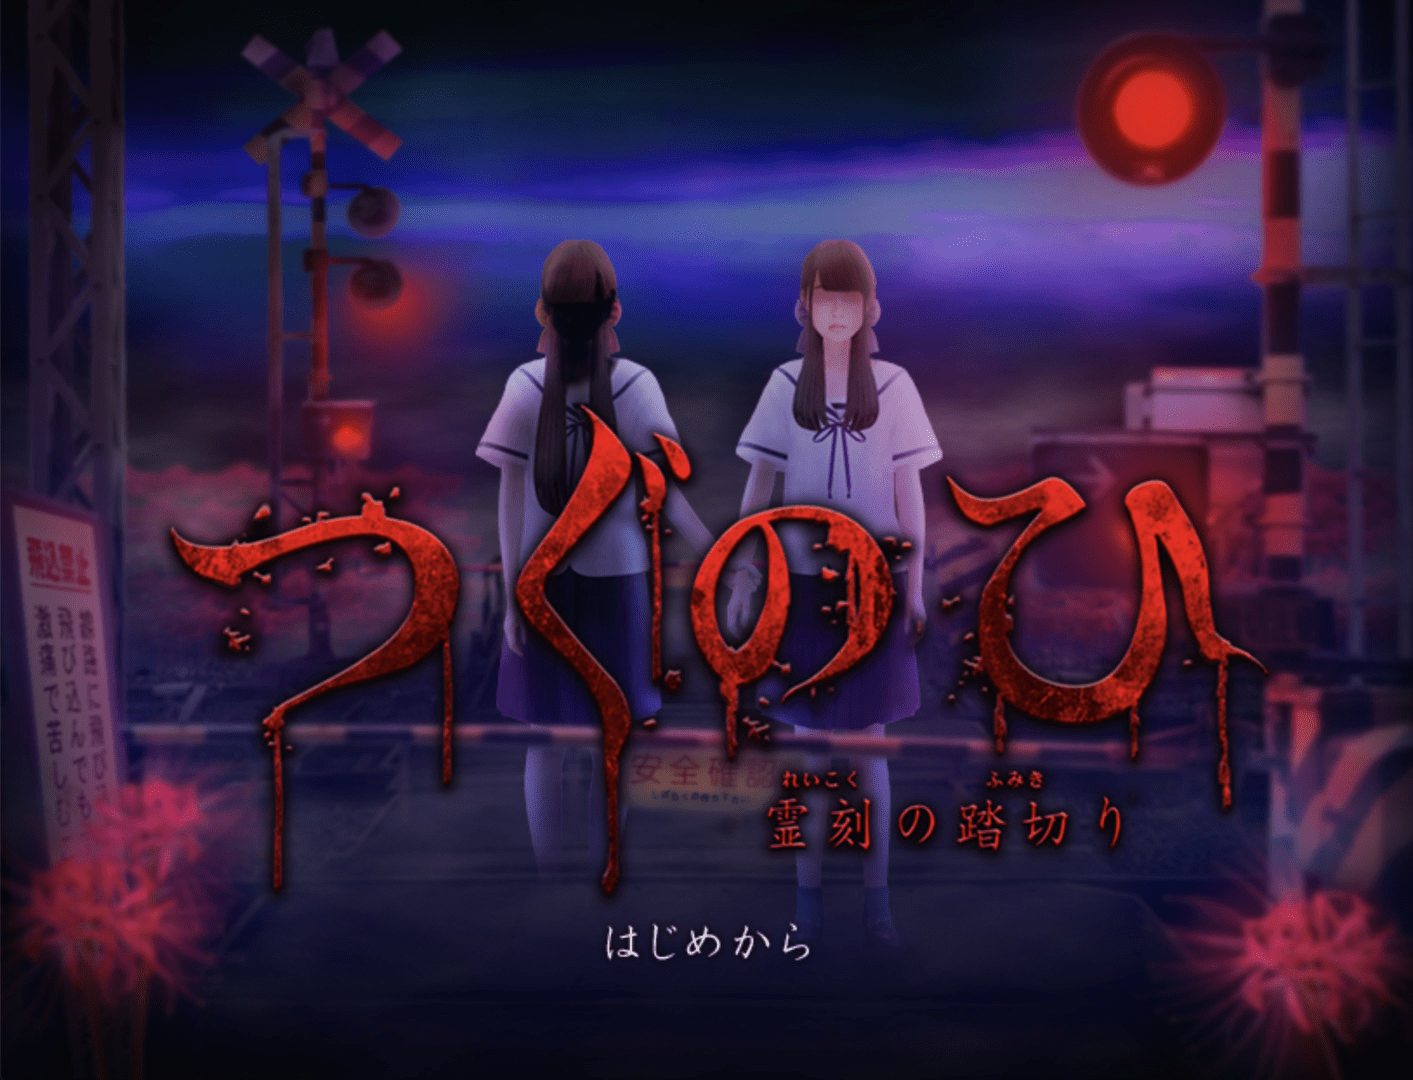 有史以来最恐怖游戏之一《tsugunohi翌日》8月13日发售决定